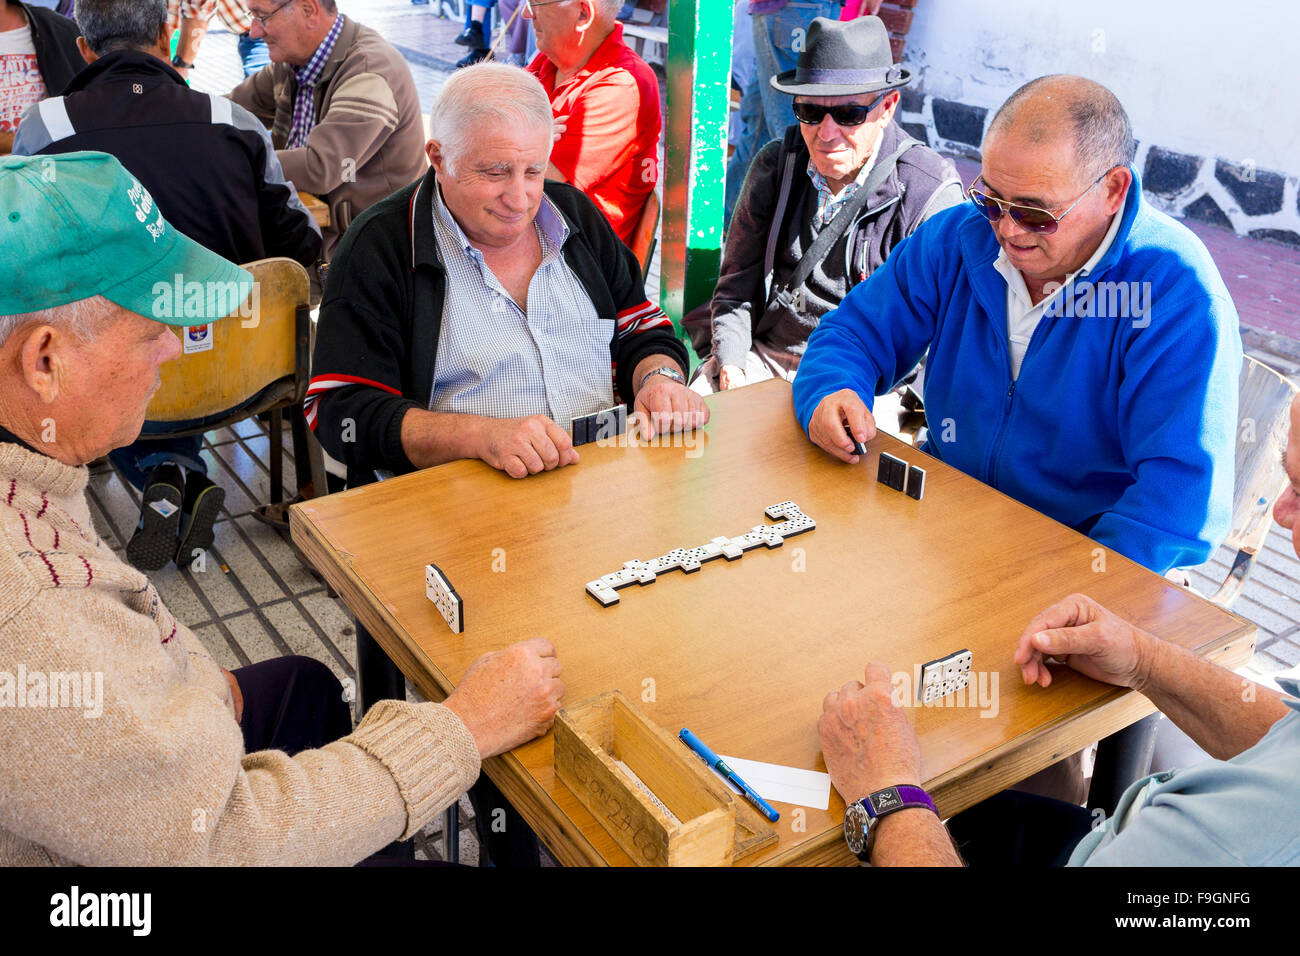 Les hommes jouant aux dominos, Arrecife, Lanzarote, îles Canaries, Espagne Banque D'Images